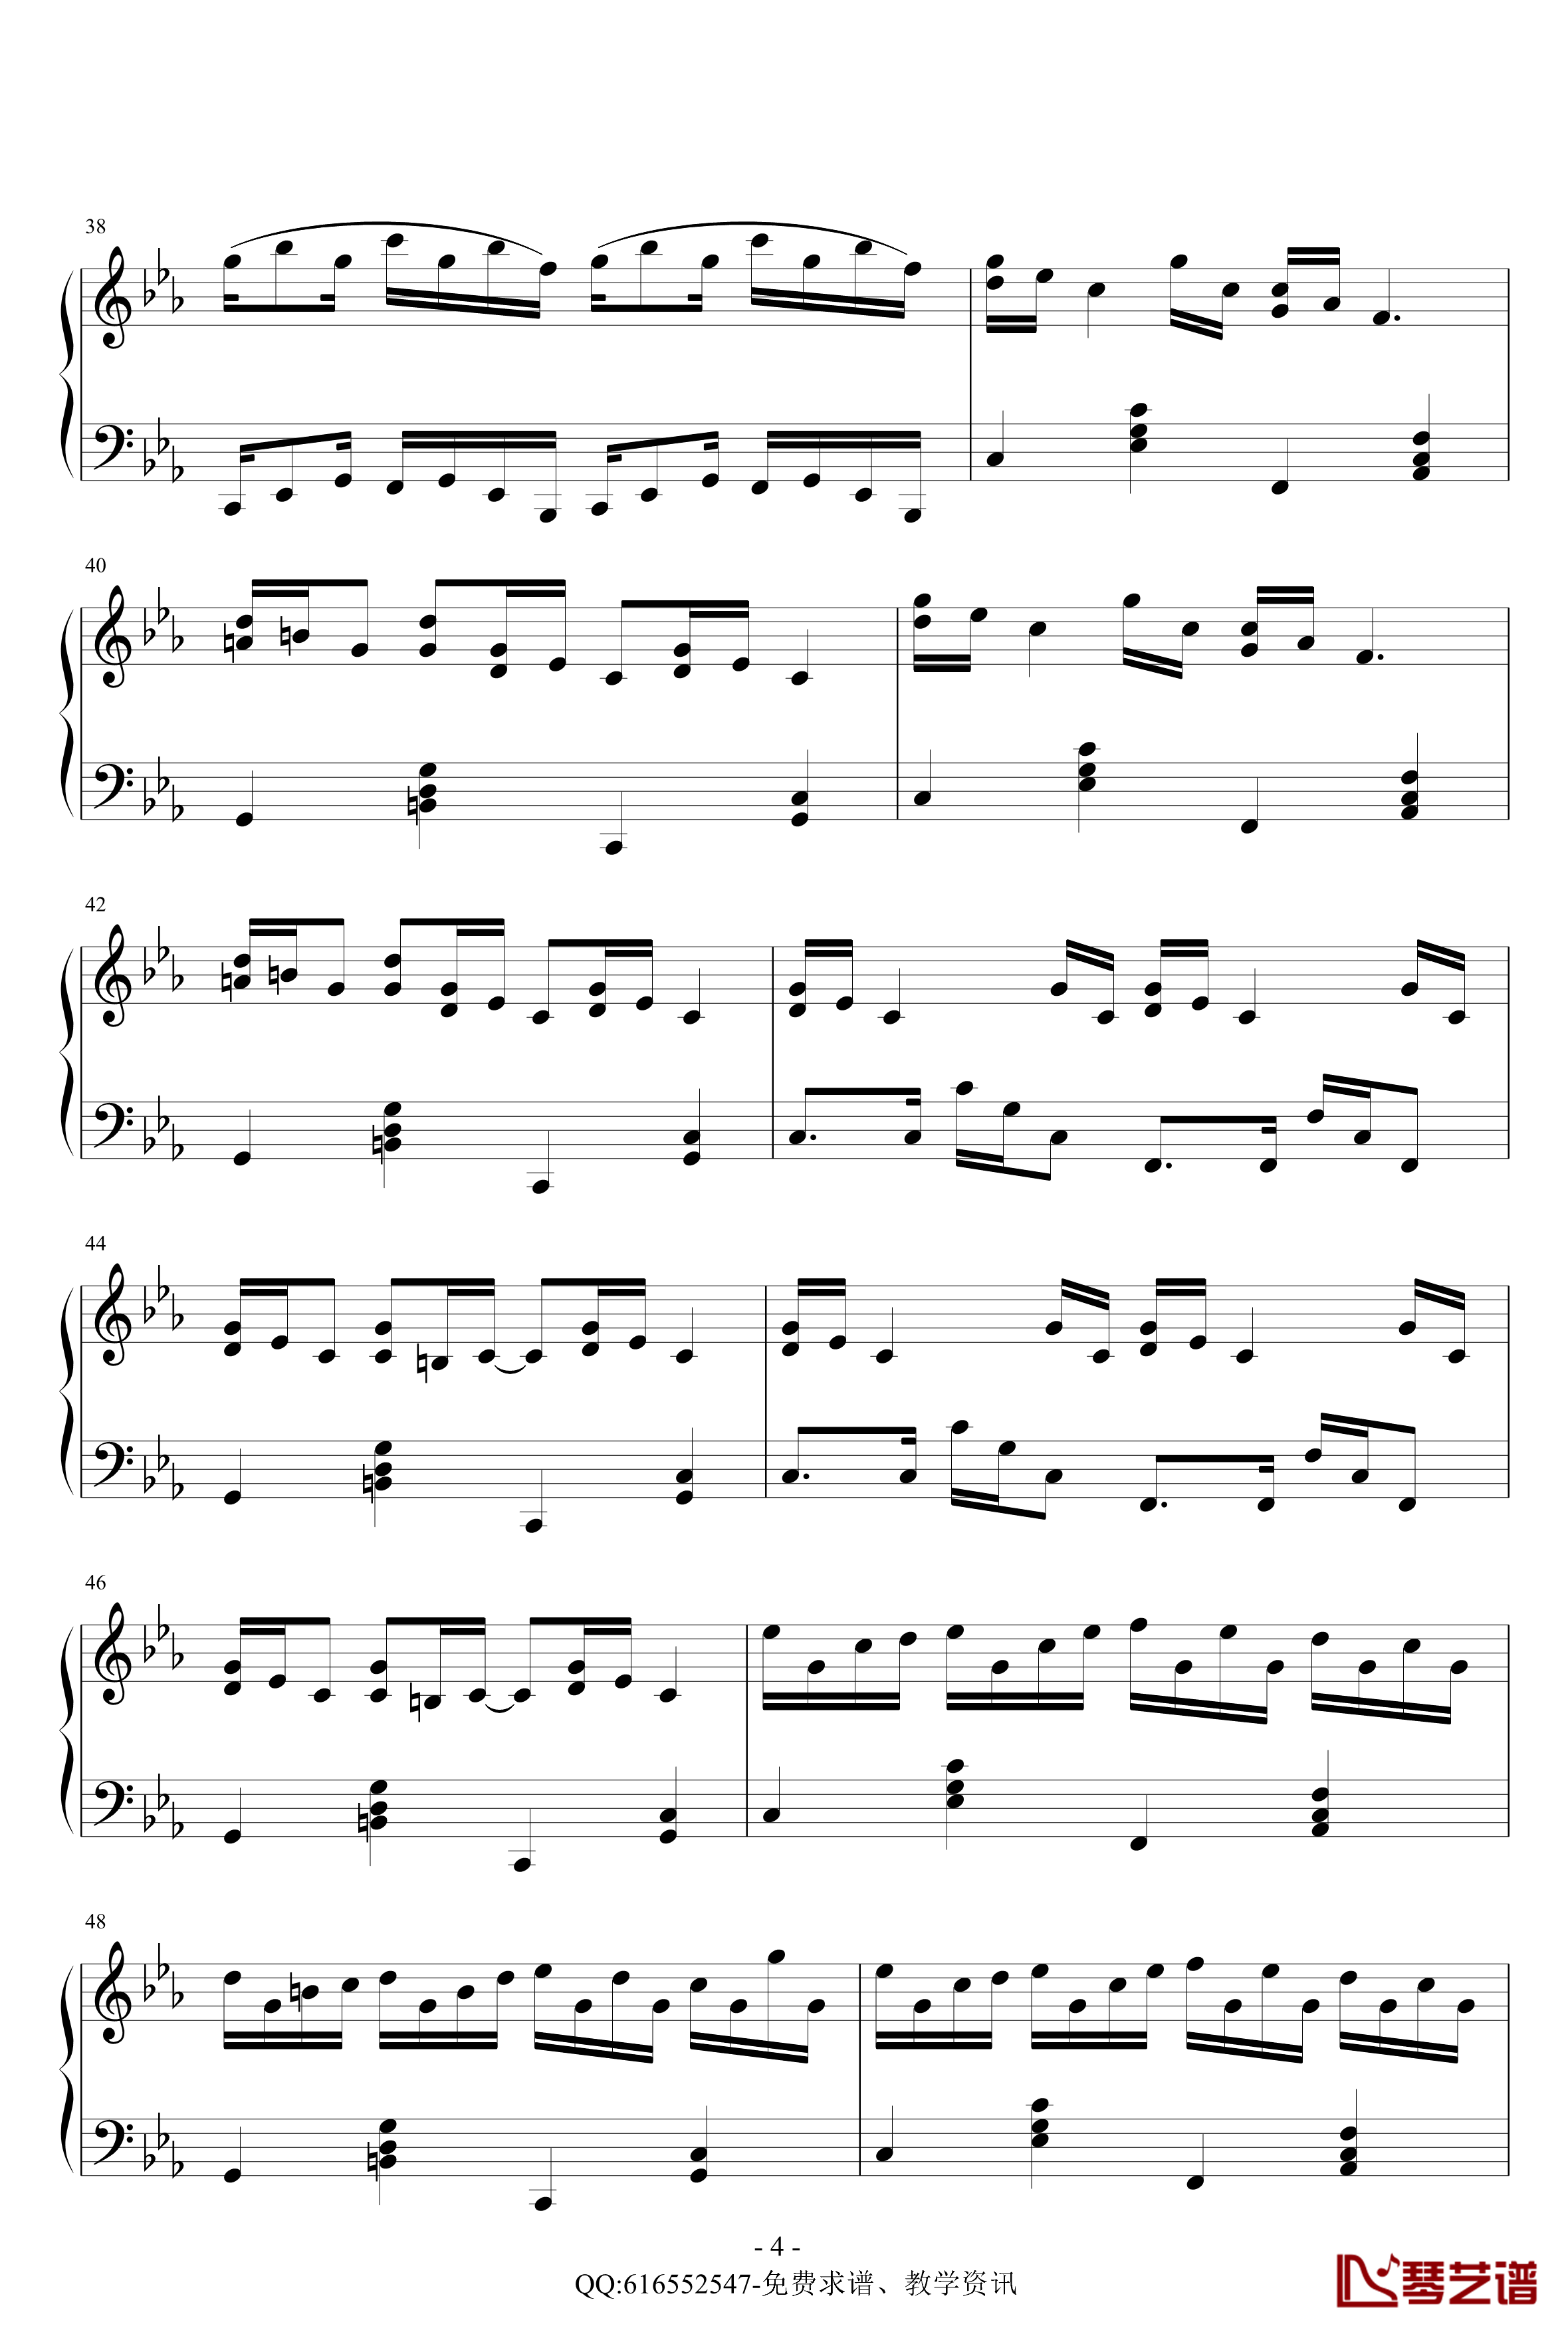 克罗地亚狂想曲钢琴谱-简化版-金龙鱼170427-马克西姆-Maksim·Mrvica4